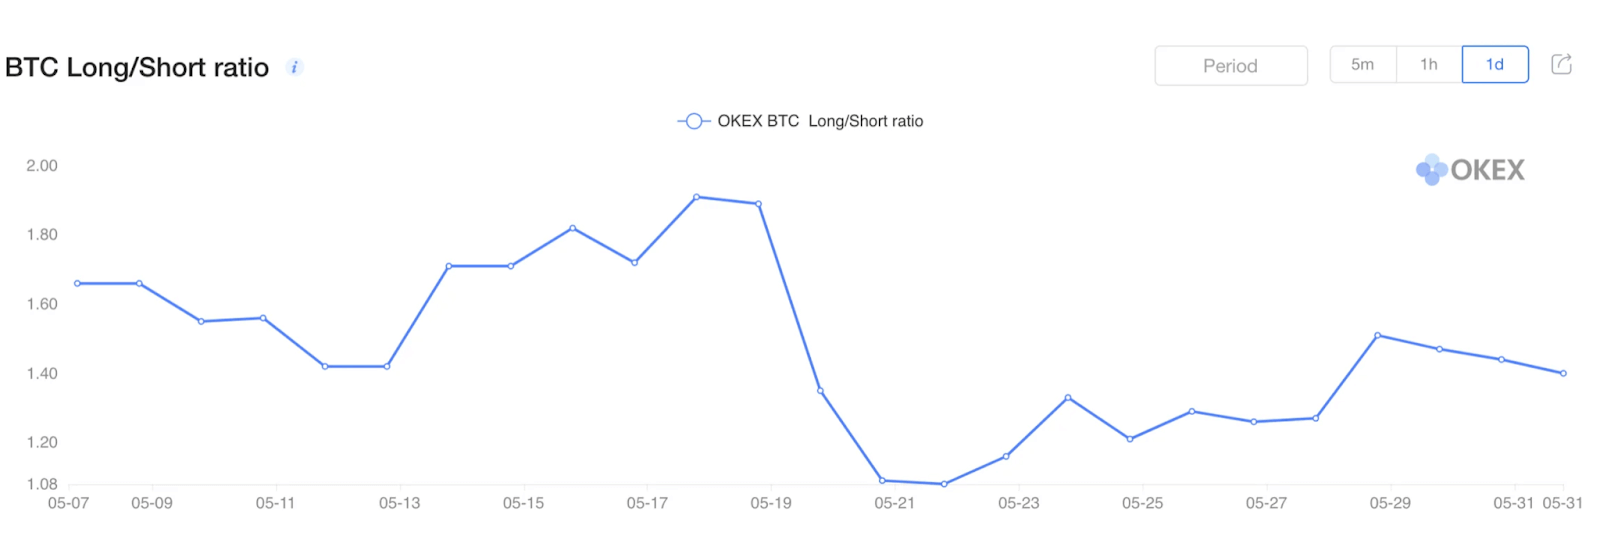 BTC Long/Short Ratio. Source:  OKEx.com